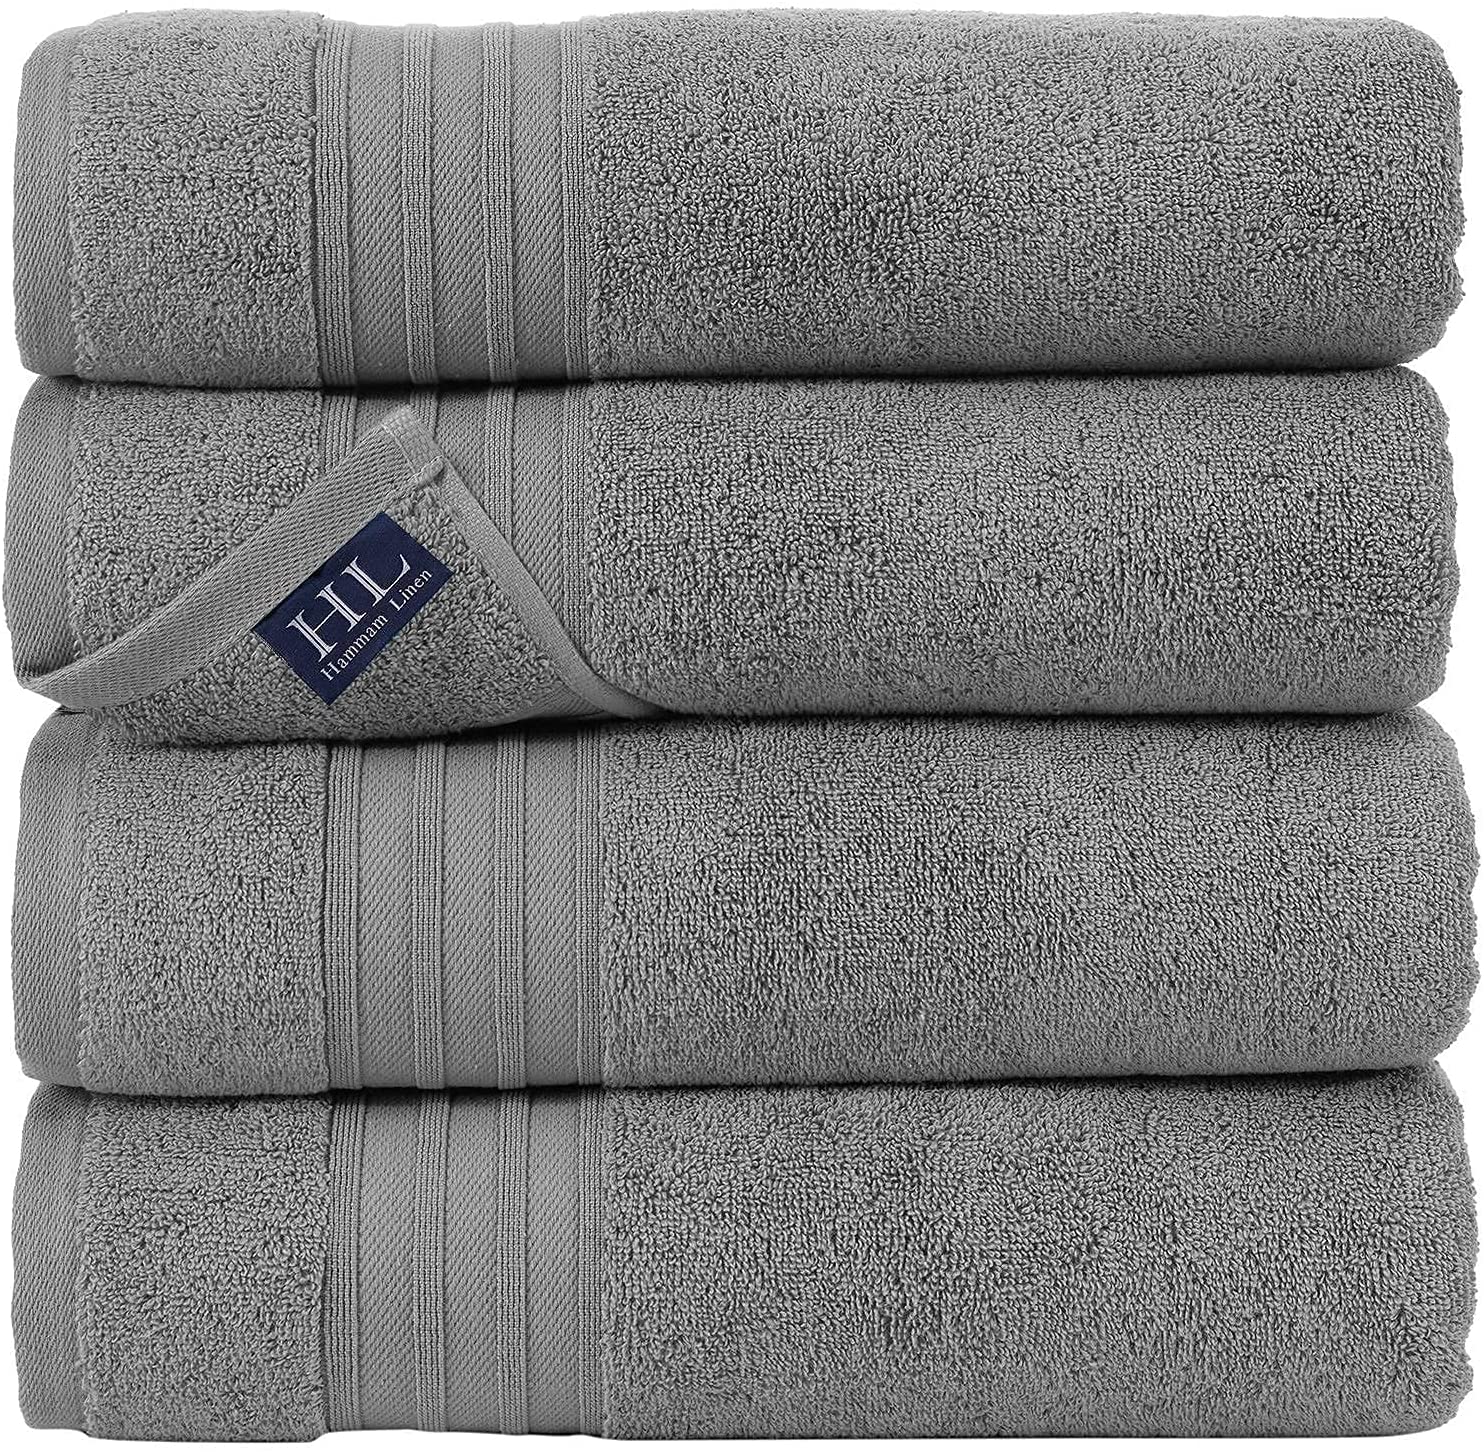 Hammam Linen Lightweight Eco-Friendly Bath Towels, 4-Piece